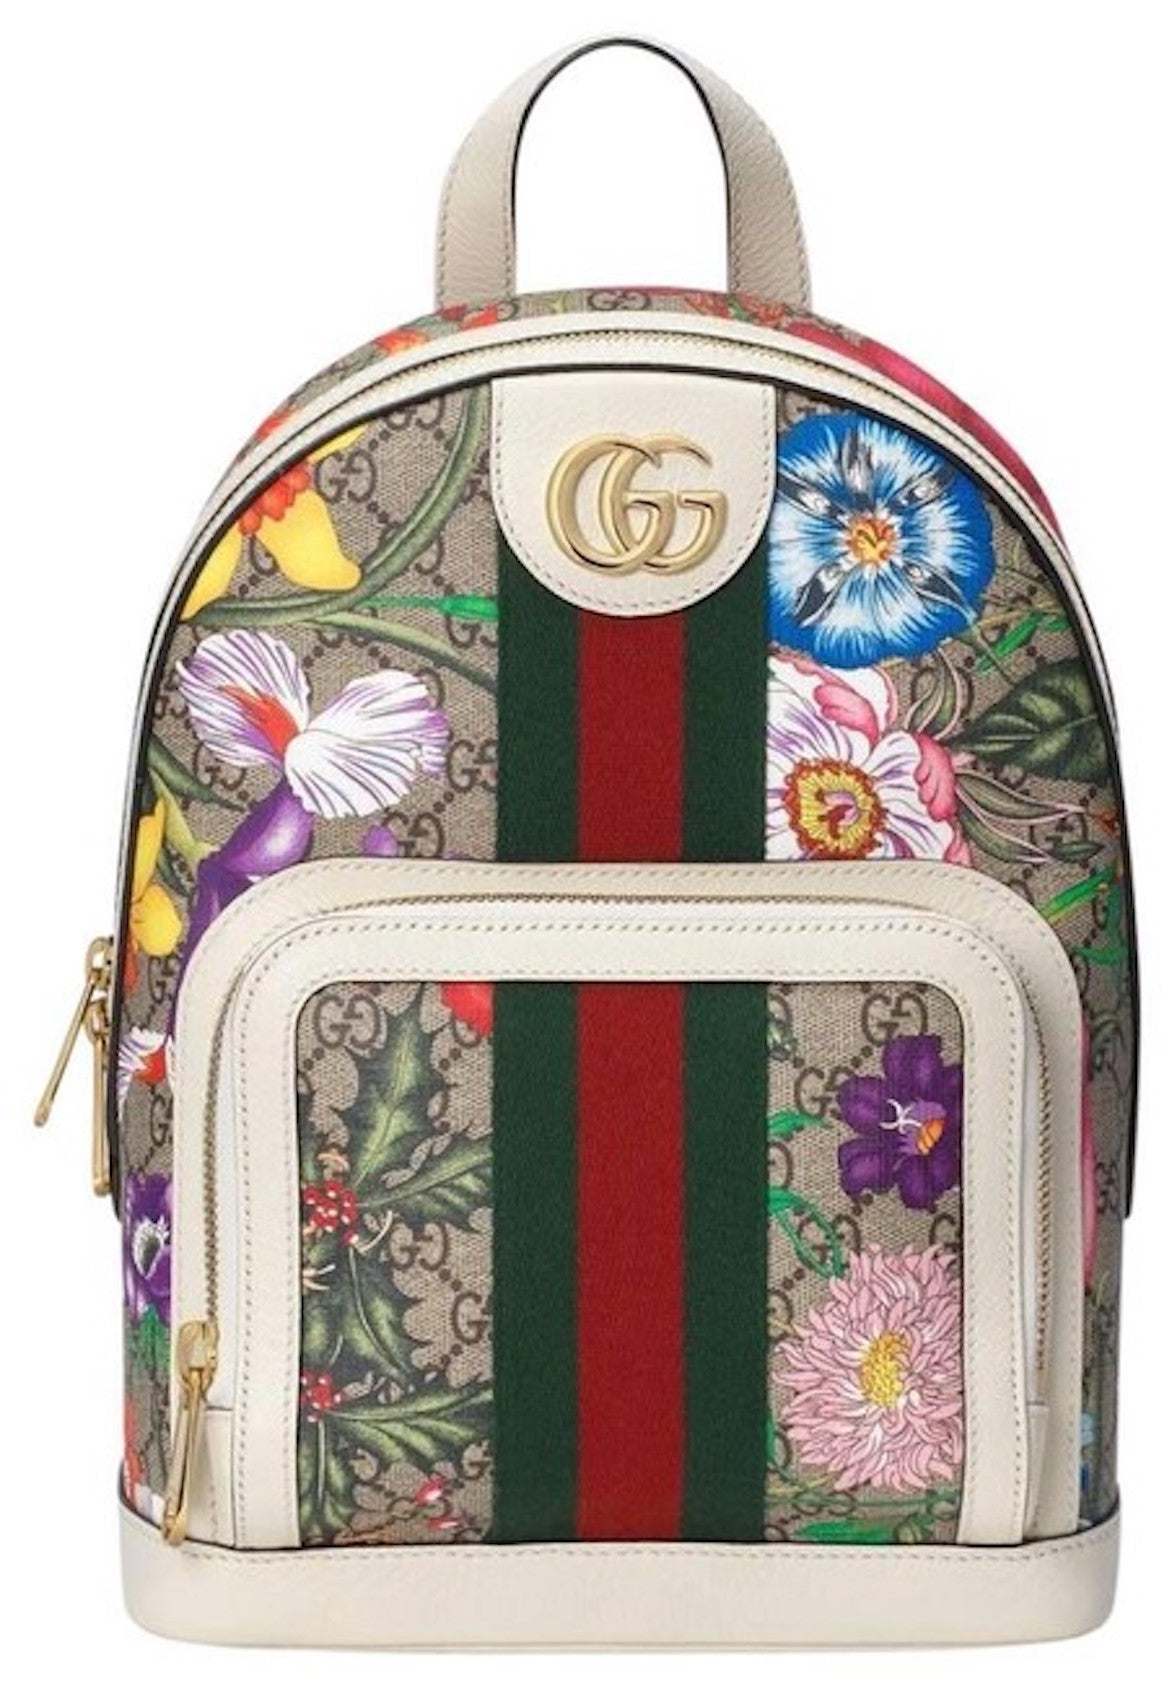 Gucci Ophidia Handbag Small GG Supreme Beige/White